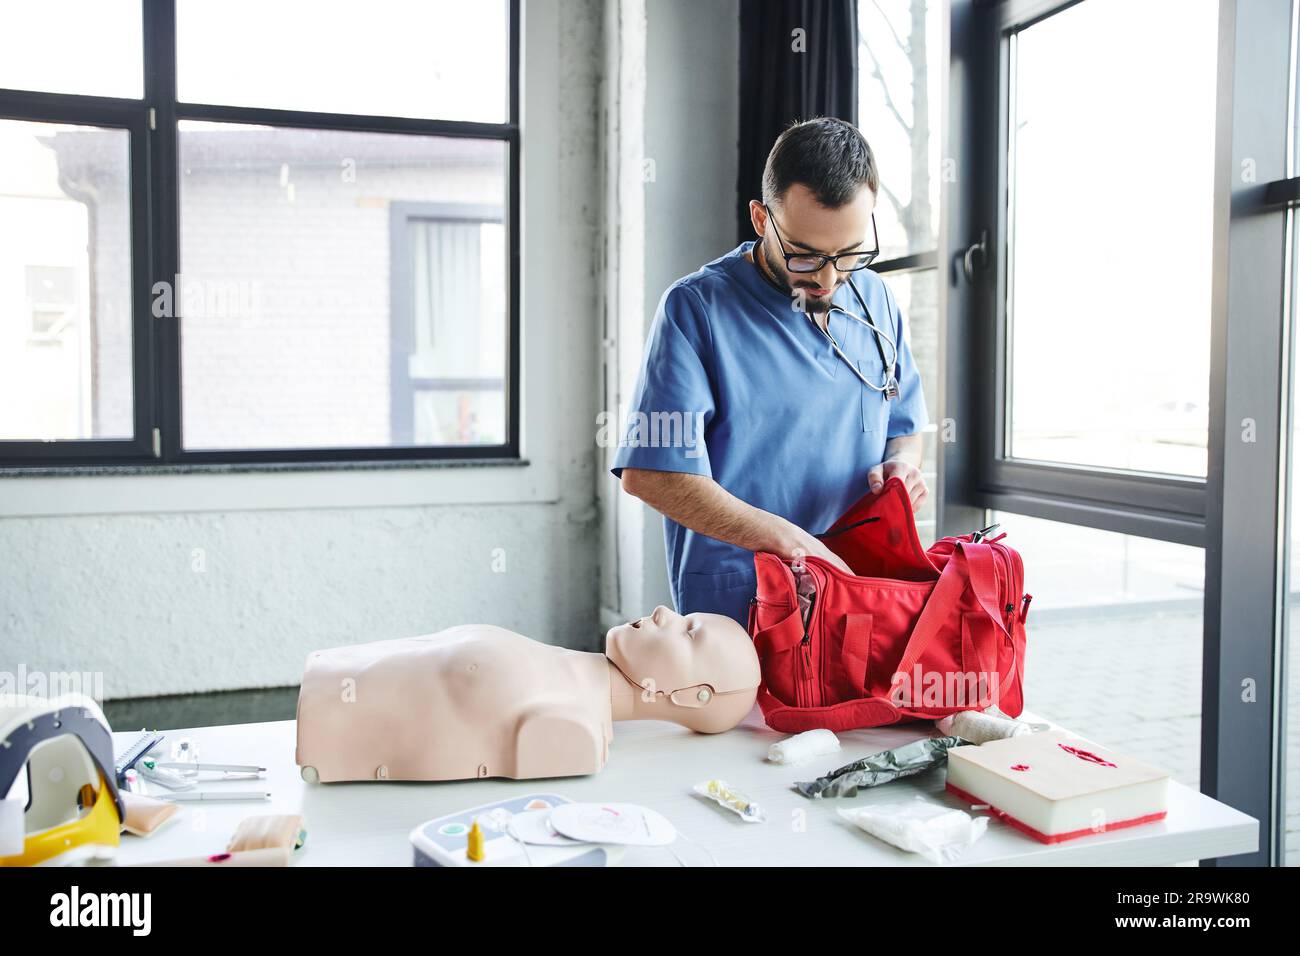 Jeune barbu médecin en uniforme bleu et lunettes de vue déballant le sac de premiers soins rouge près du mannequin de RCP, du défibrillateur automatisé et d'autres équipements en train Banque D'Images